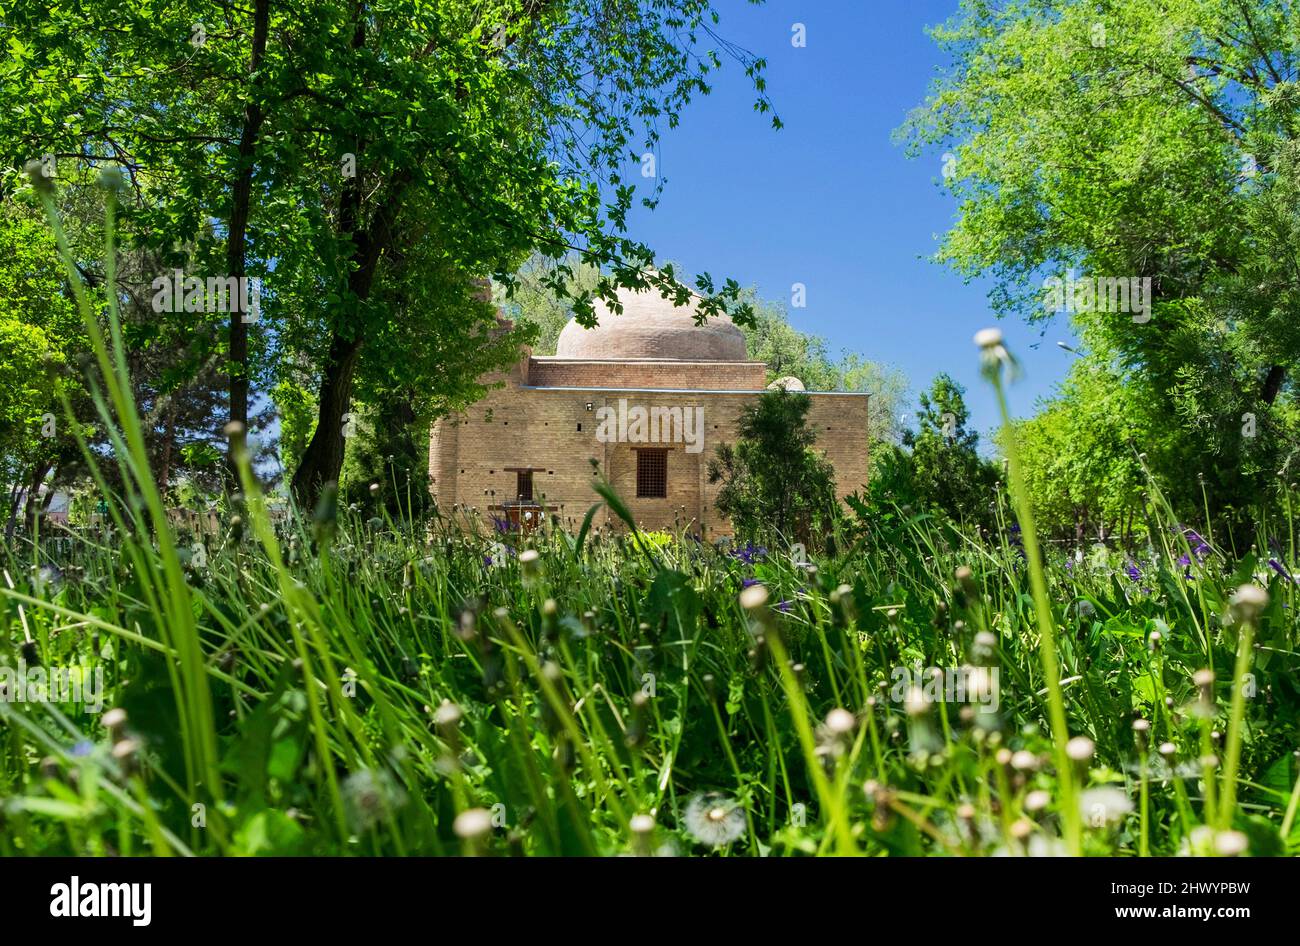 Das alte Denkmal der Architektur des 11.. Jahrhunderts, Mausoleum von Karakhan, Taraz-Stadt, Kasachstan. Stockfoto